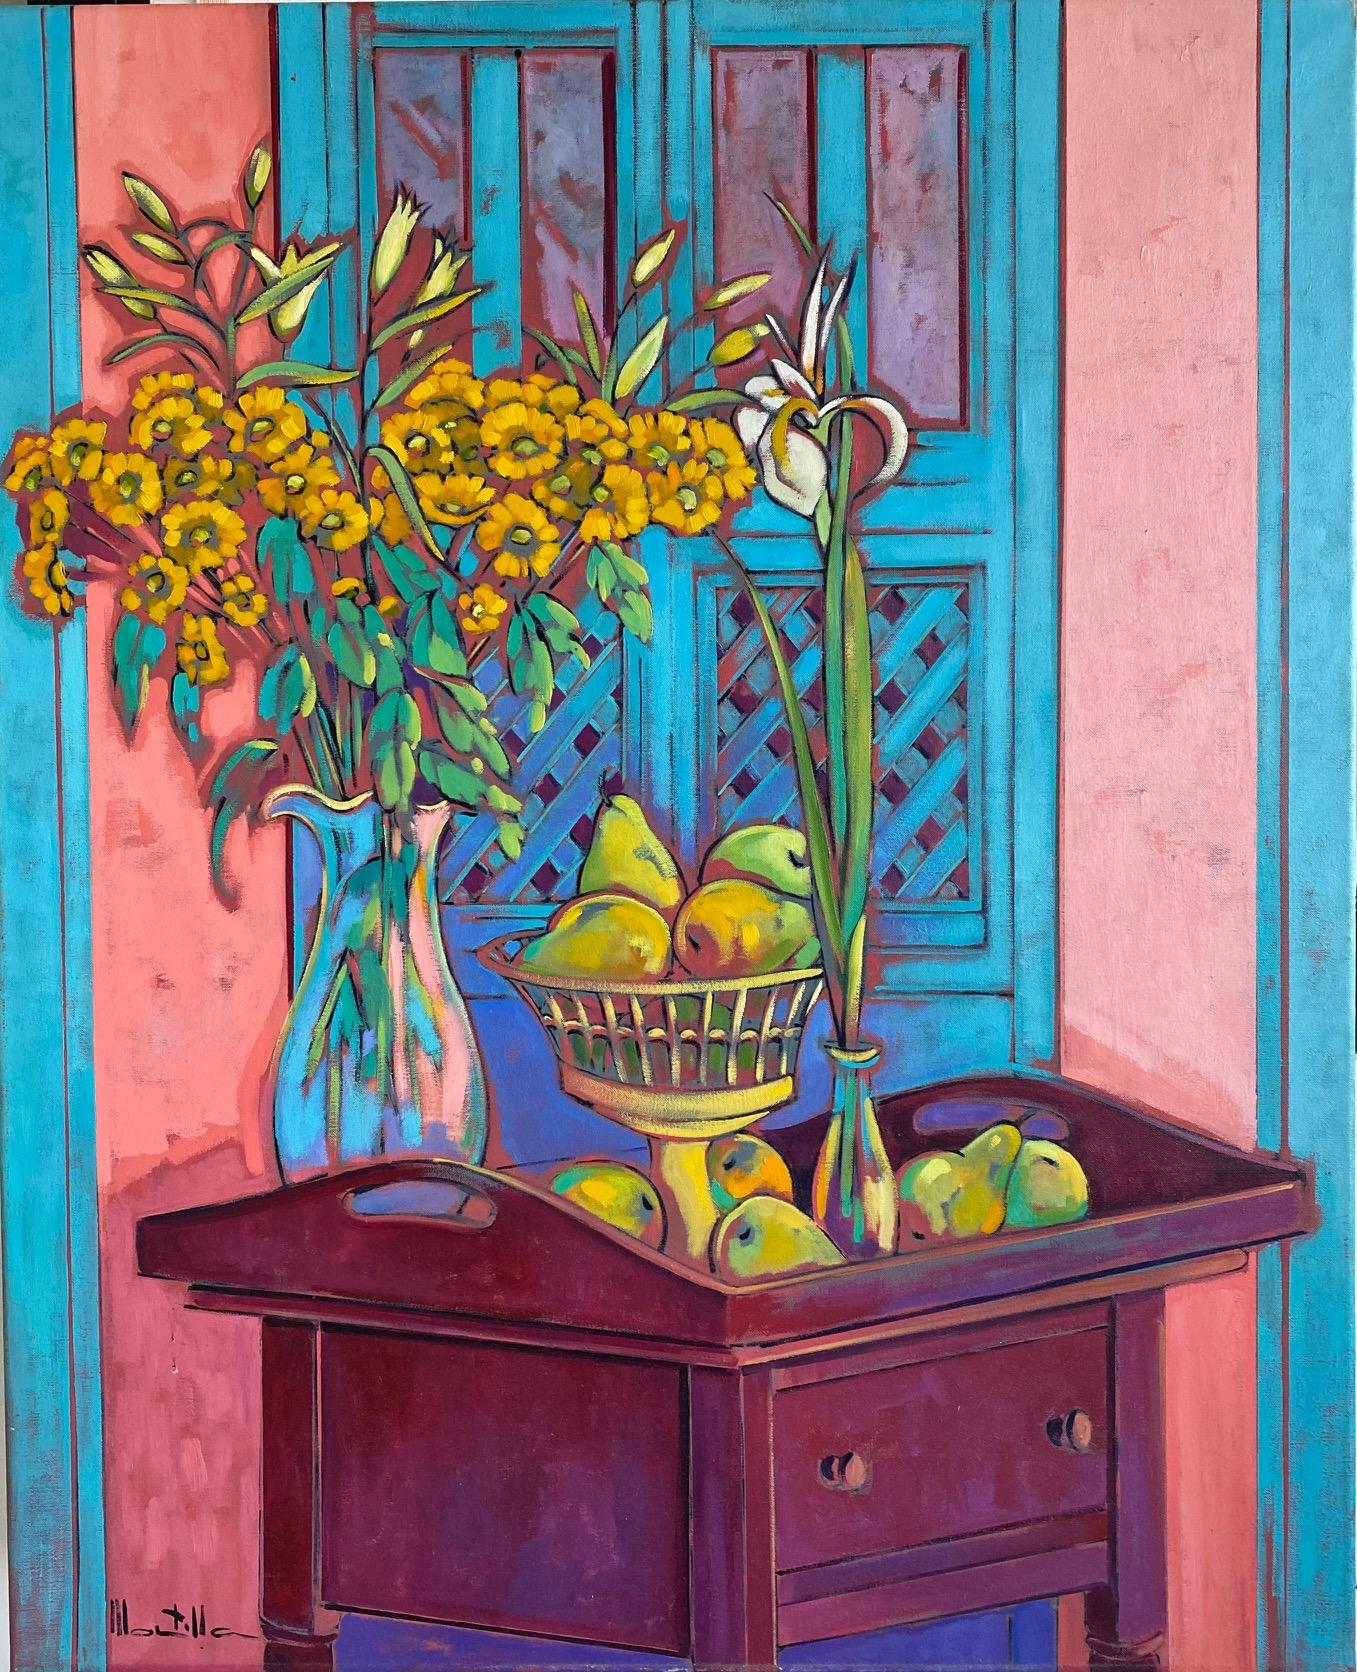 Expressionistisches Stillleben mit Blumen und Früchten. Gelb, Türkis, Rosa, Lila